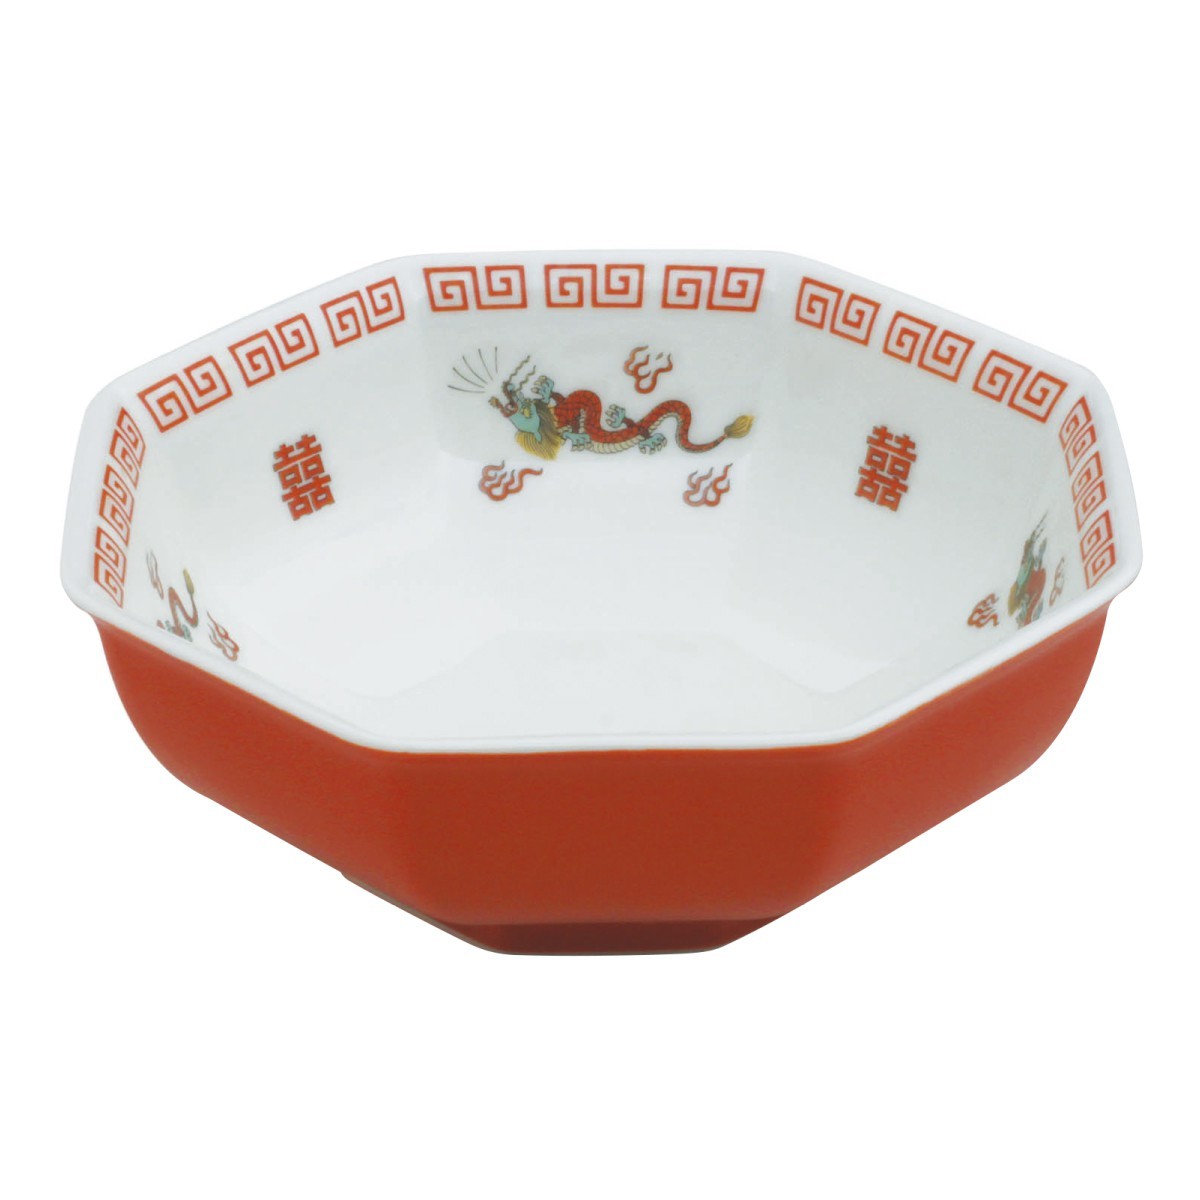 チャーハン皿 可愛い 焼飯 皿 陶器 直径17.6x6.6cm 中華食器 おまち堂 町中華 中華レト...